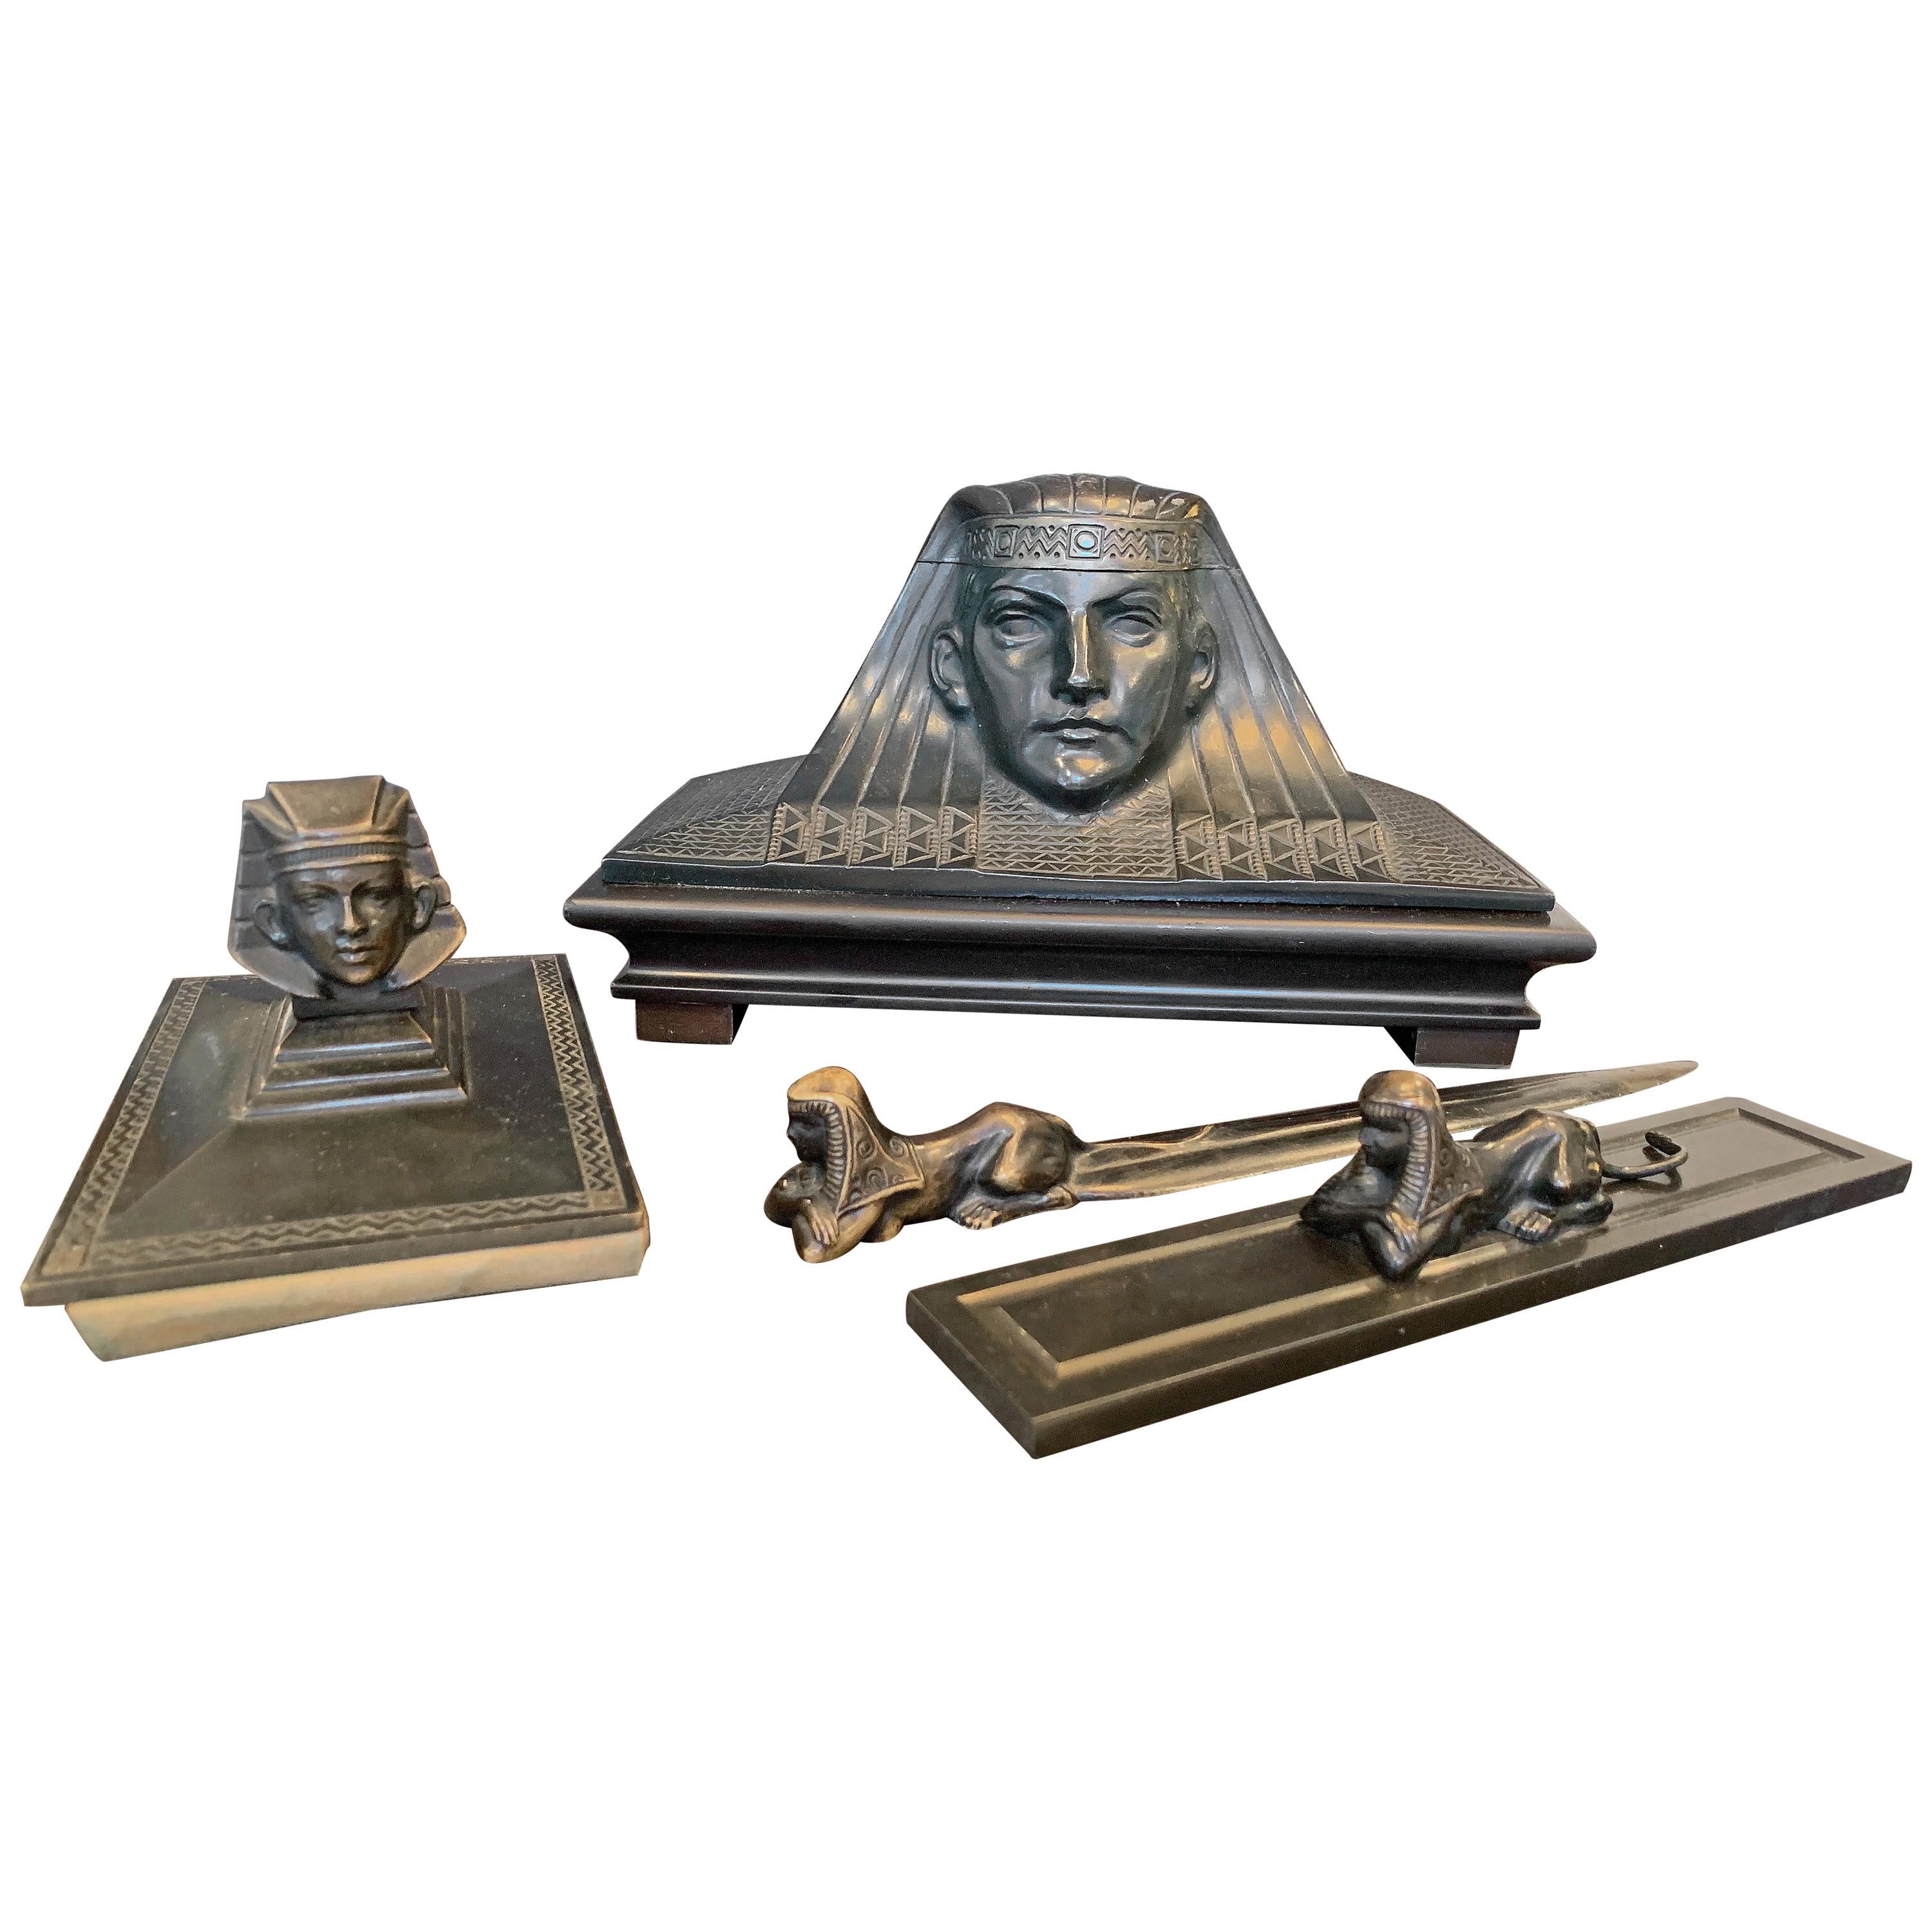 Egyptian Revival Desk Set, Stunning Group of Bronzes for the Desk by Schwarz